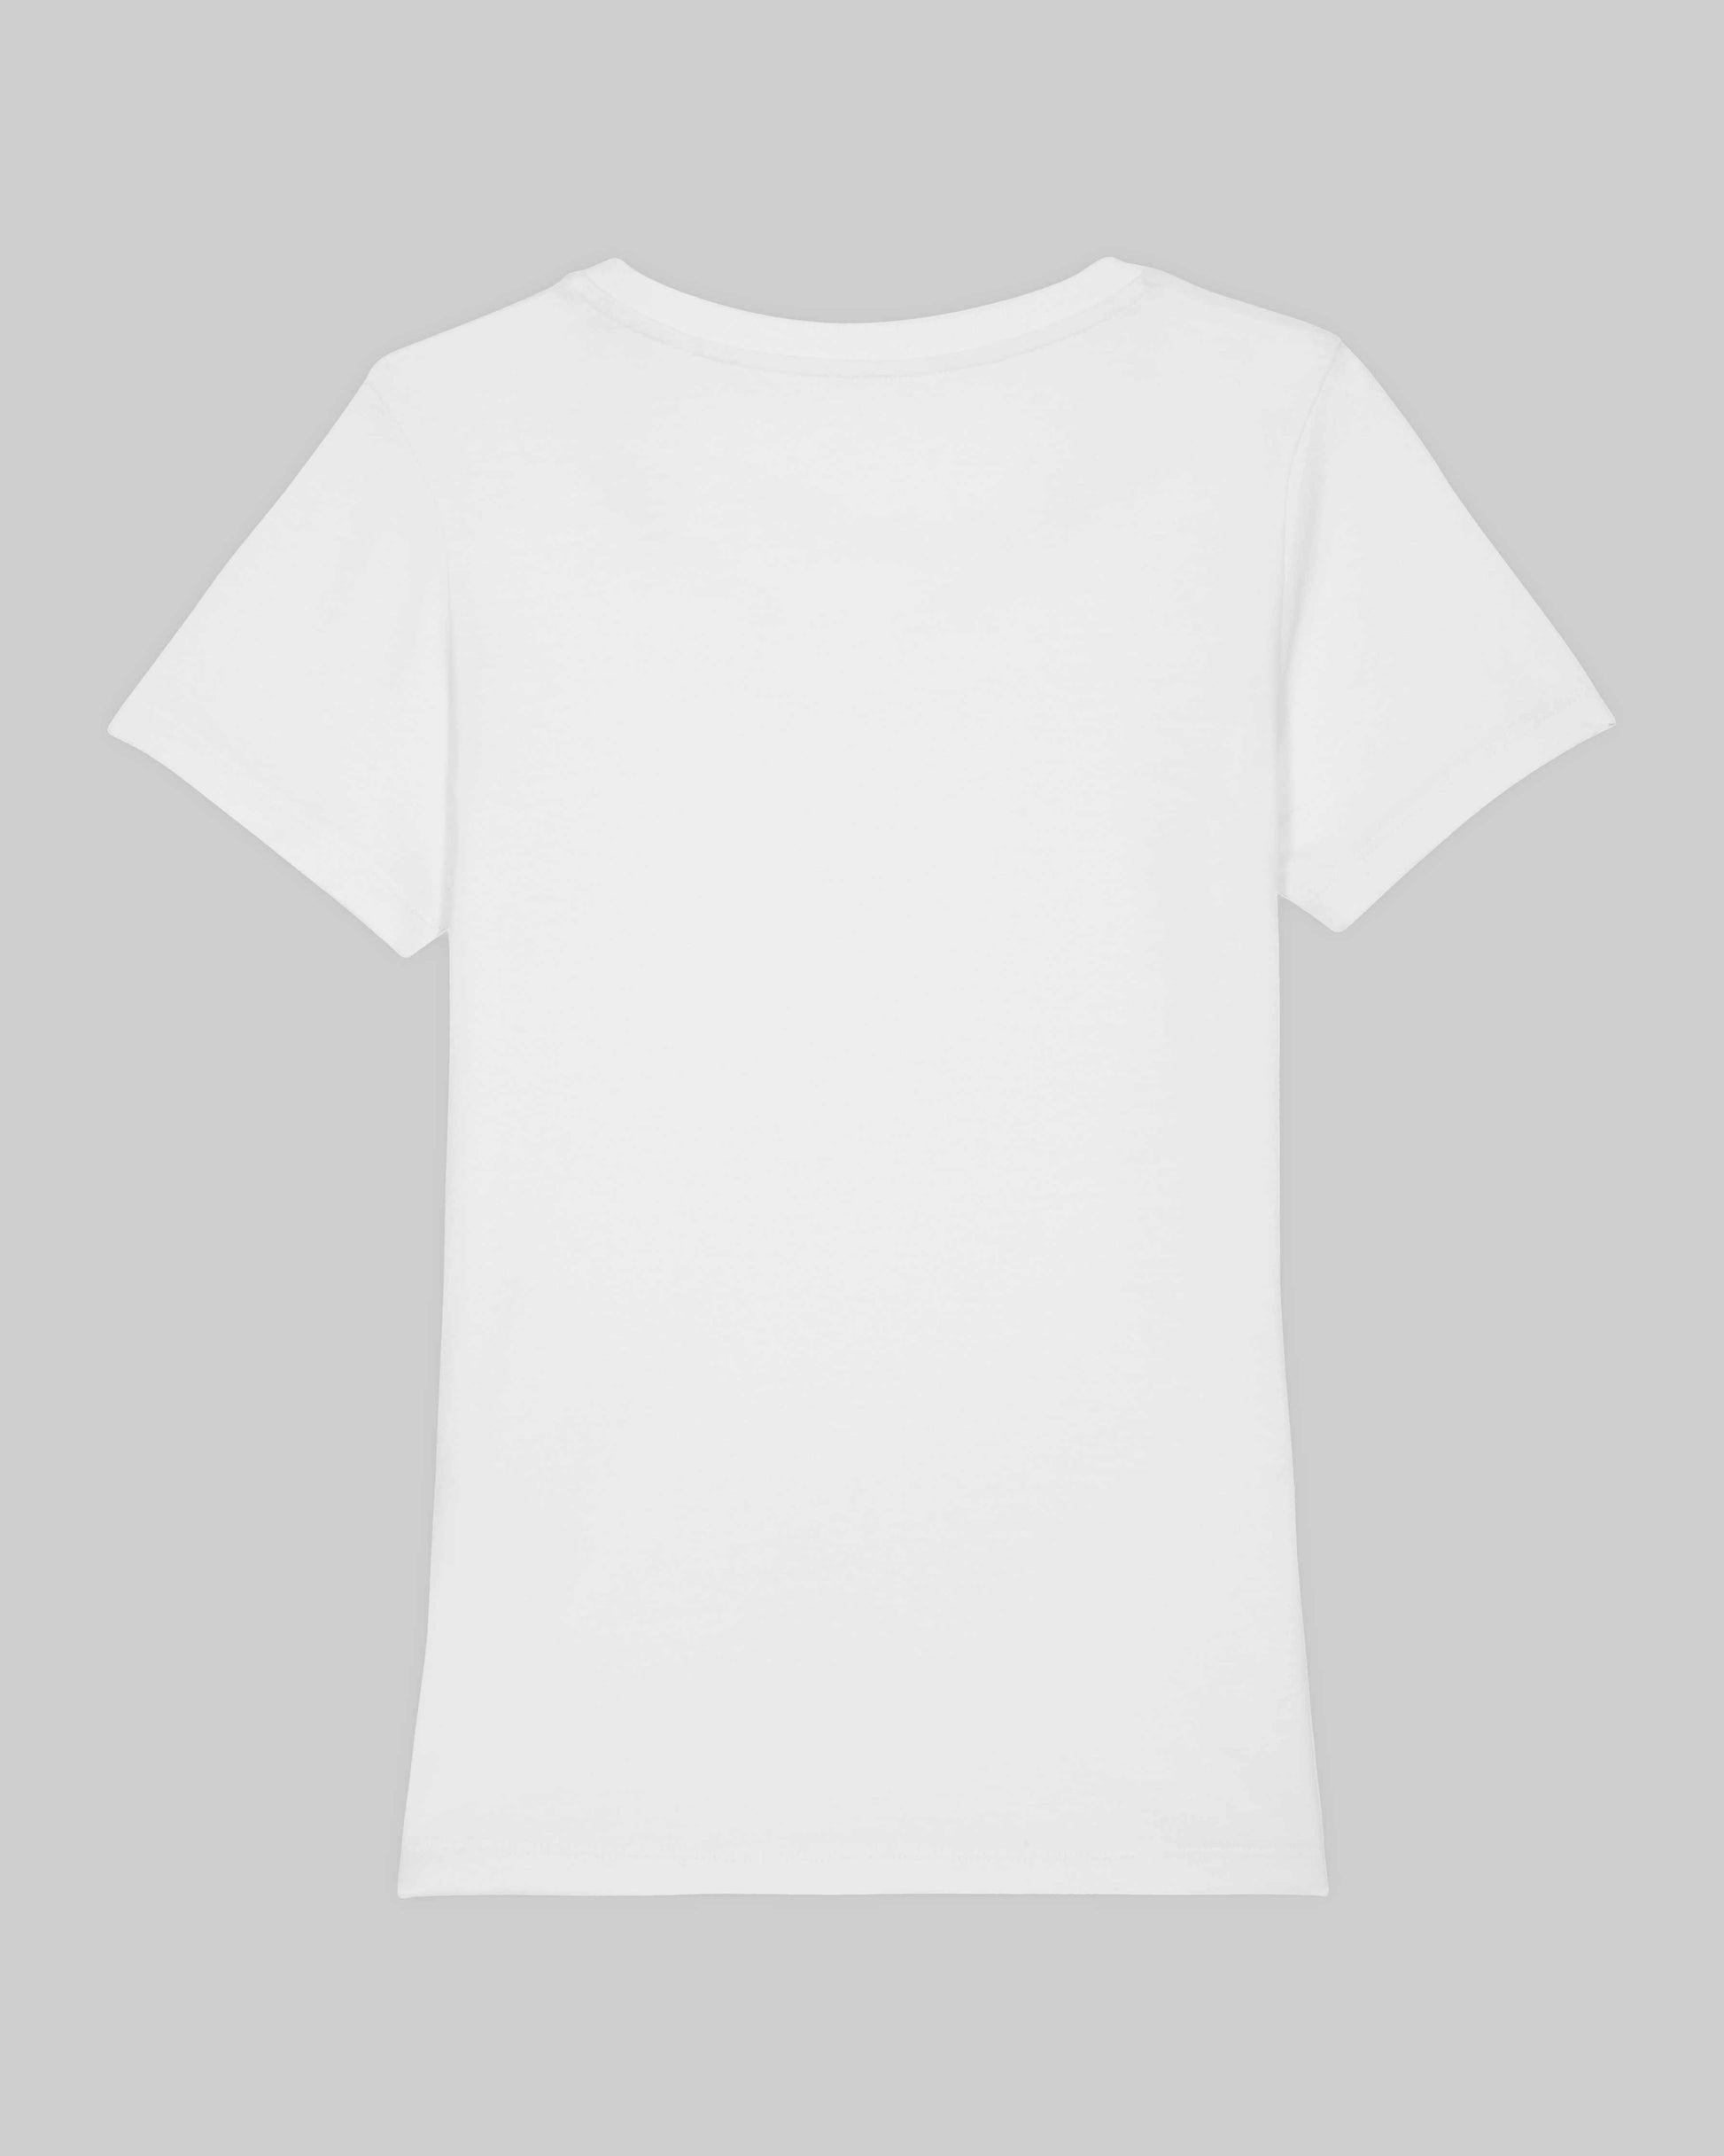 EINHORST® Organic Shirt tailliert in "Weiß" mit dem Motiv "lgbtq+ Regenbogen" in der Kombination schwarzer Regenbogen mit bunter Schrift, Bild von Shirt von hinten